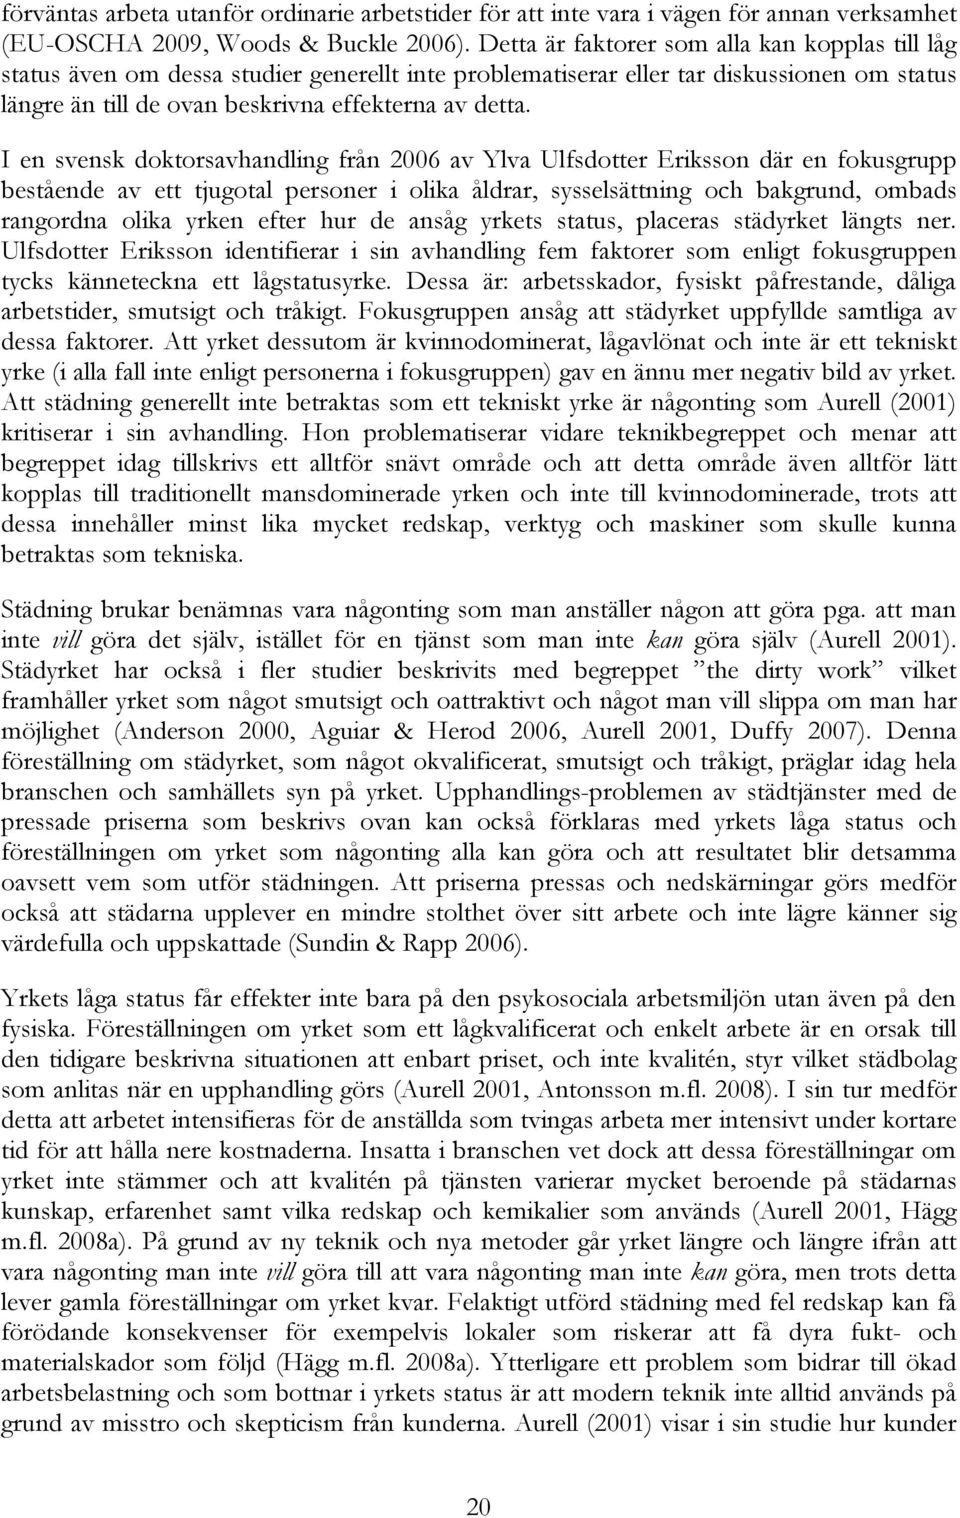 I en svensk doktorsavhandling från 2006 av Ylva Ulfsdotter Eriksson där en fokusgrupp bestående av ett tjugotal personer i olika åldrar, sysselsättning och bakgrund, ombads rangordna olika yrken